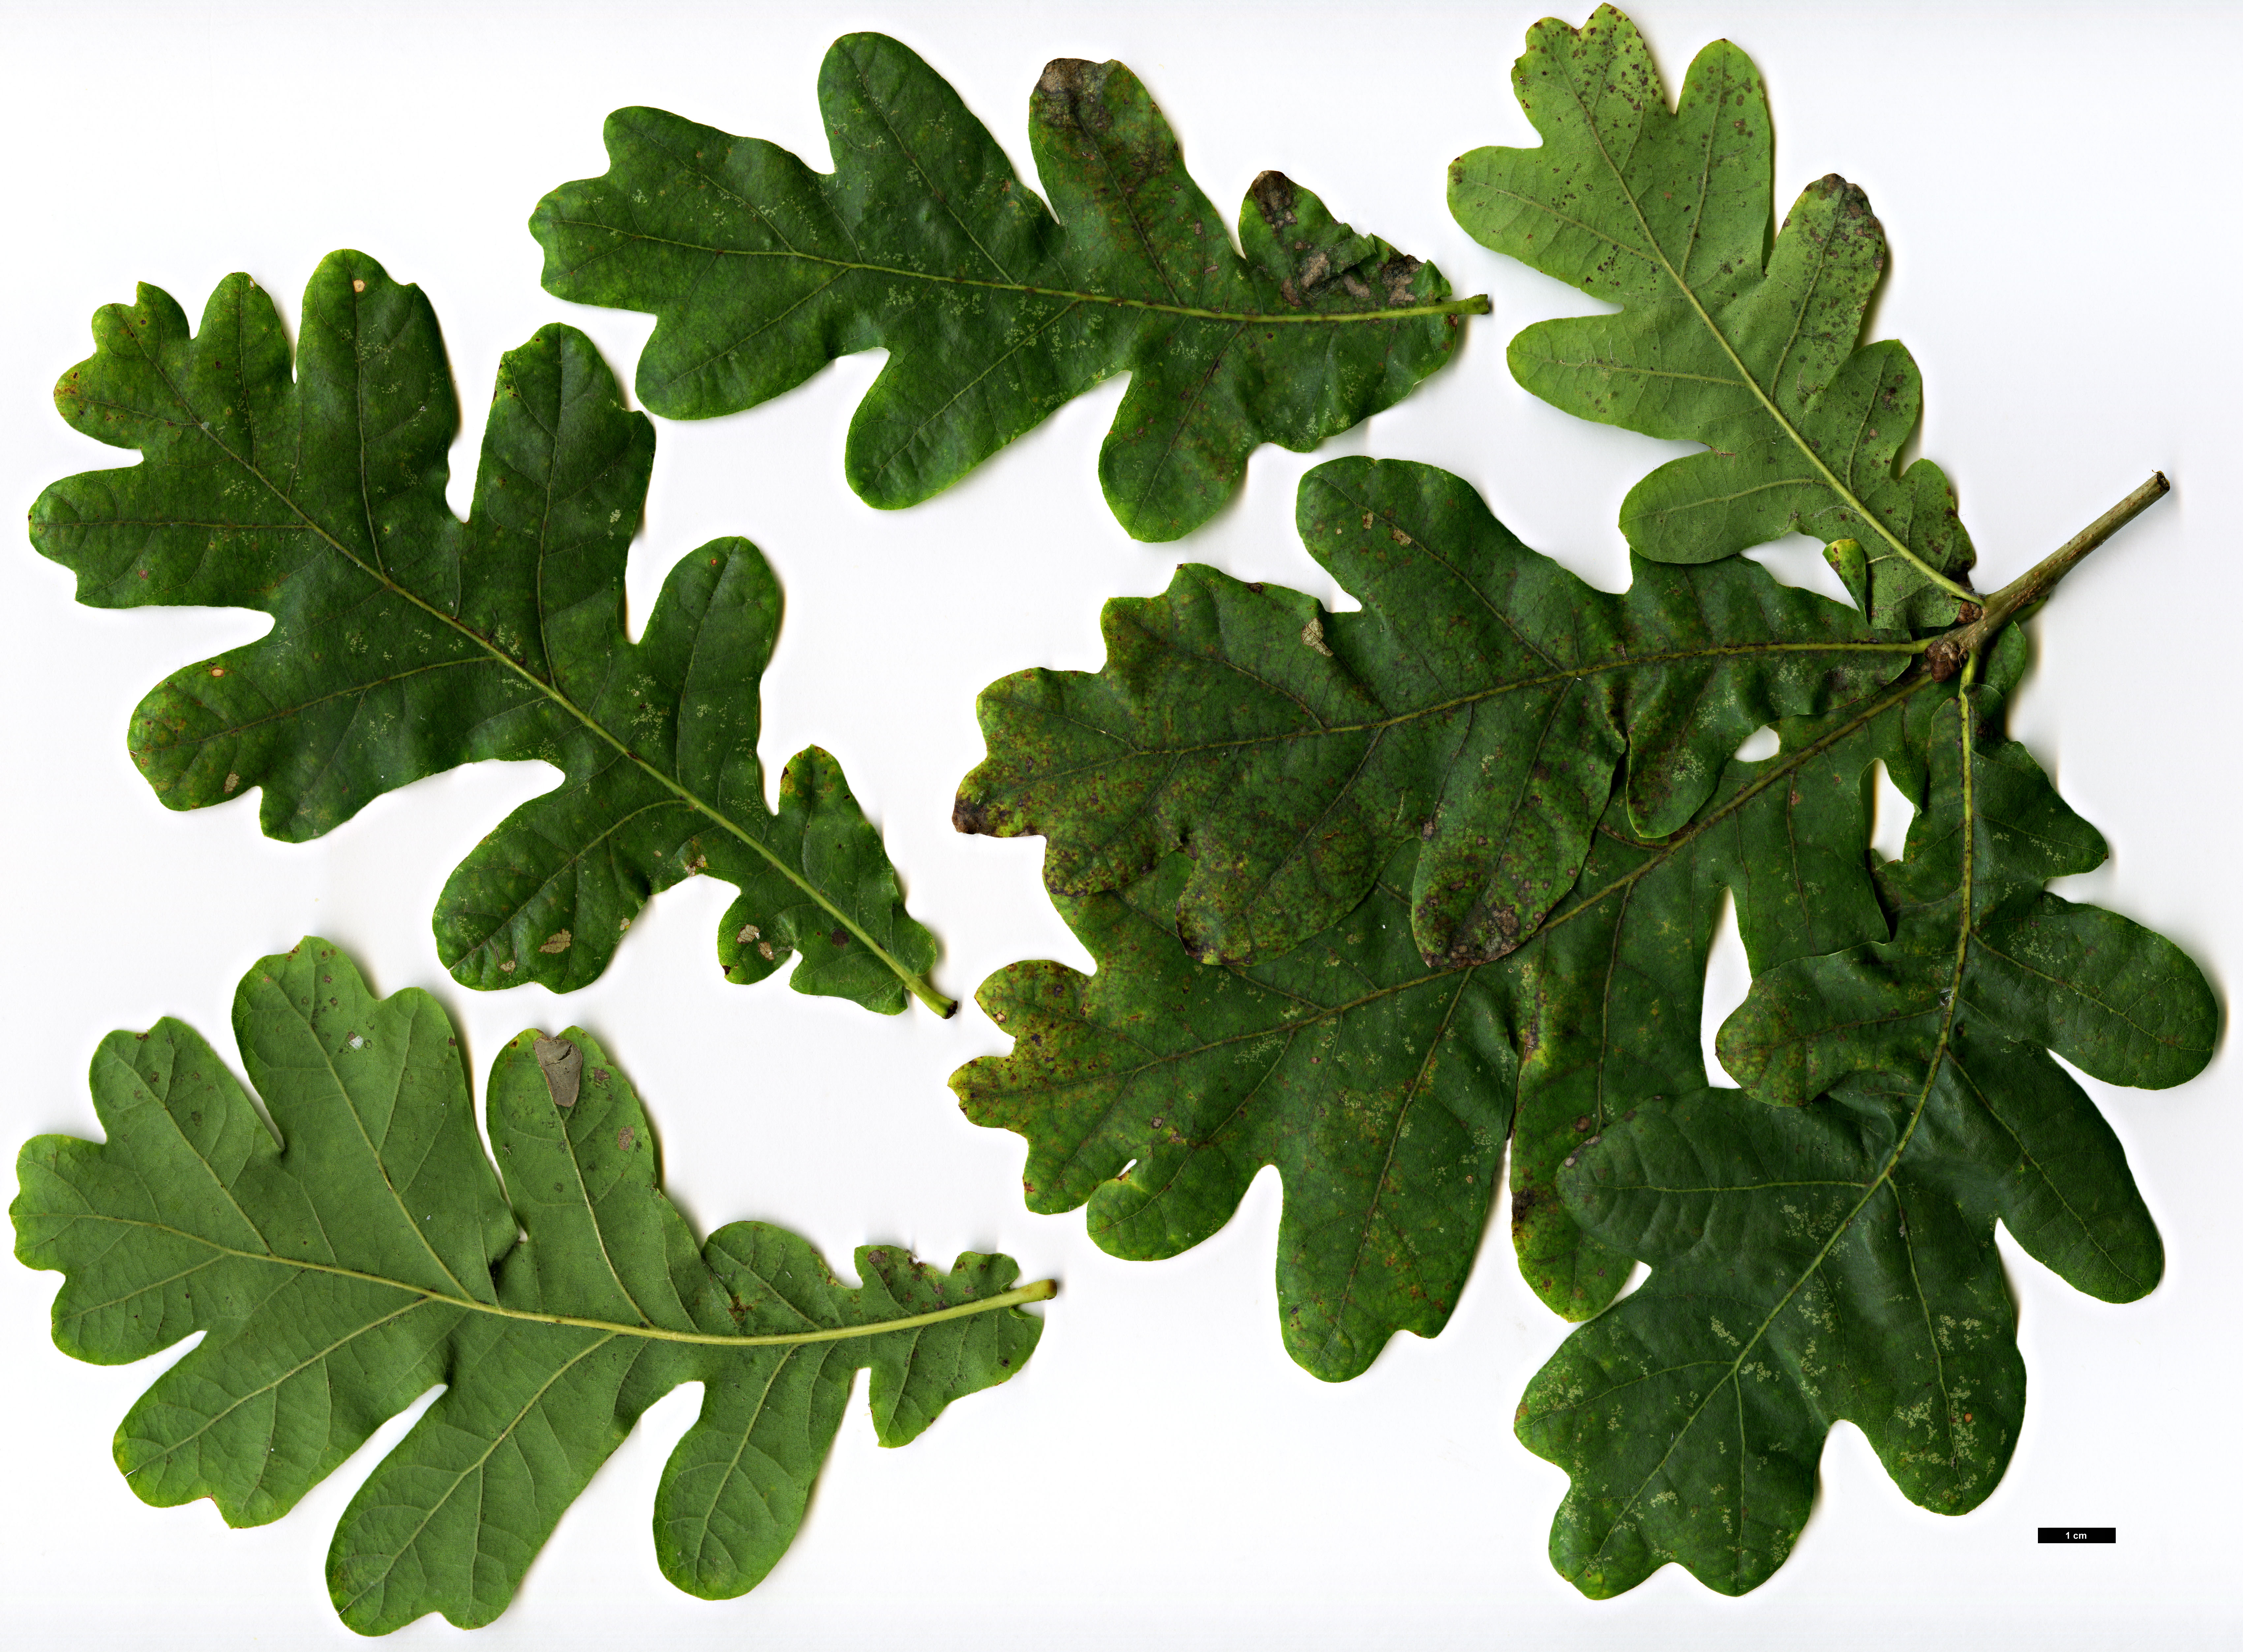 High resolution image: Family: Fagaceae - Genus: Quercus - Taxon: robur - SpeciesSub: subsp. pedunculiflora